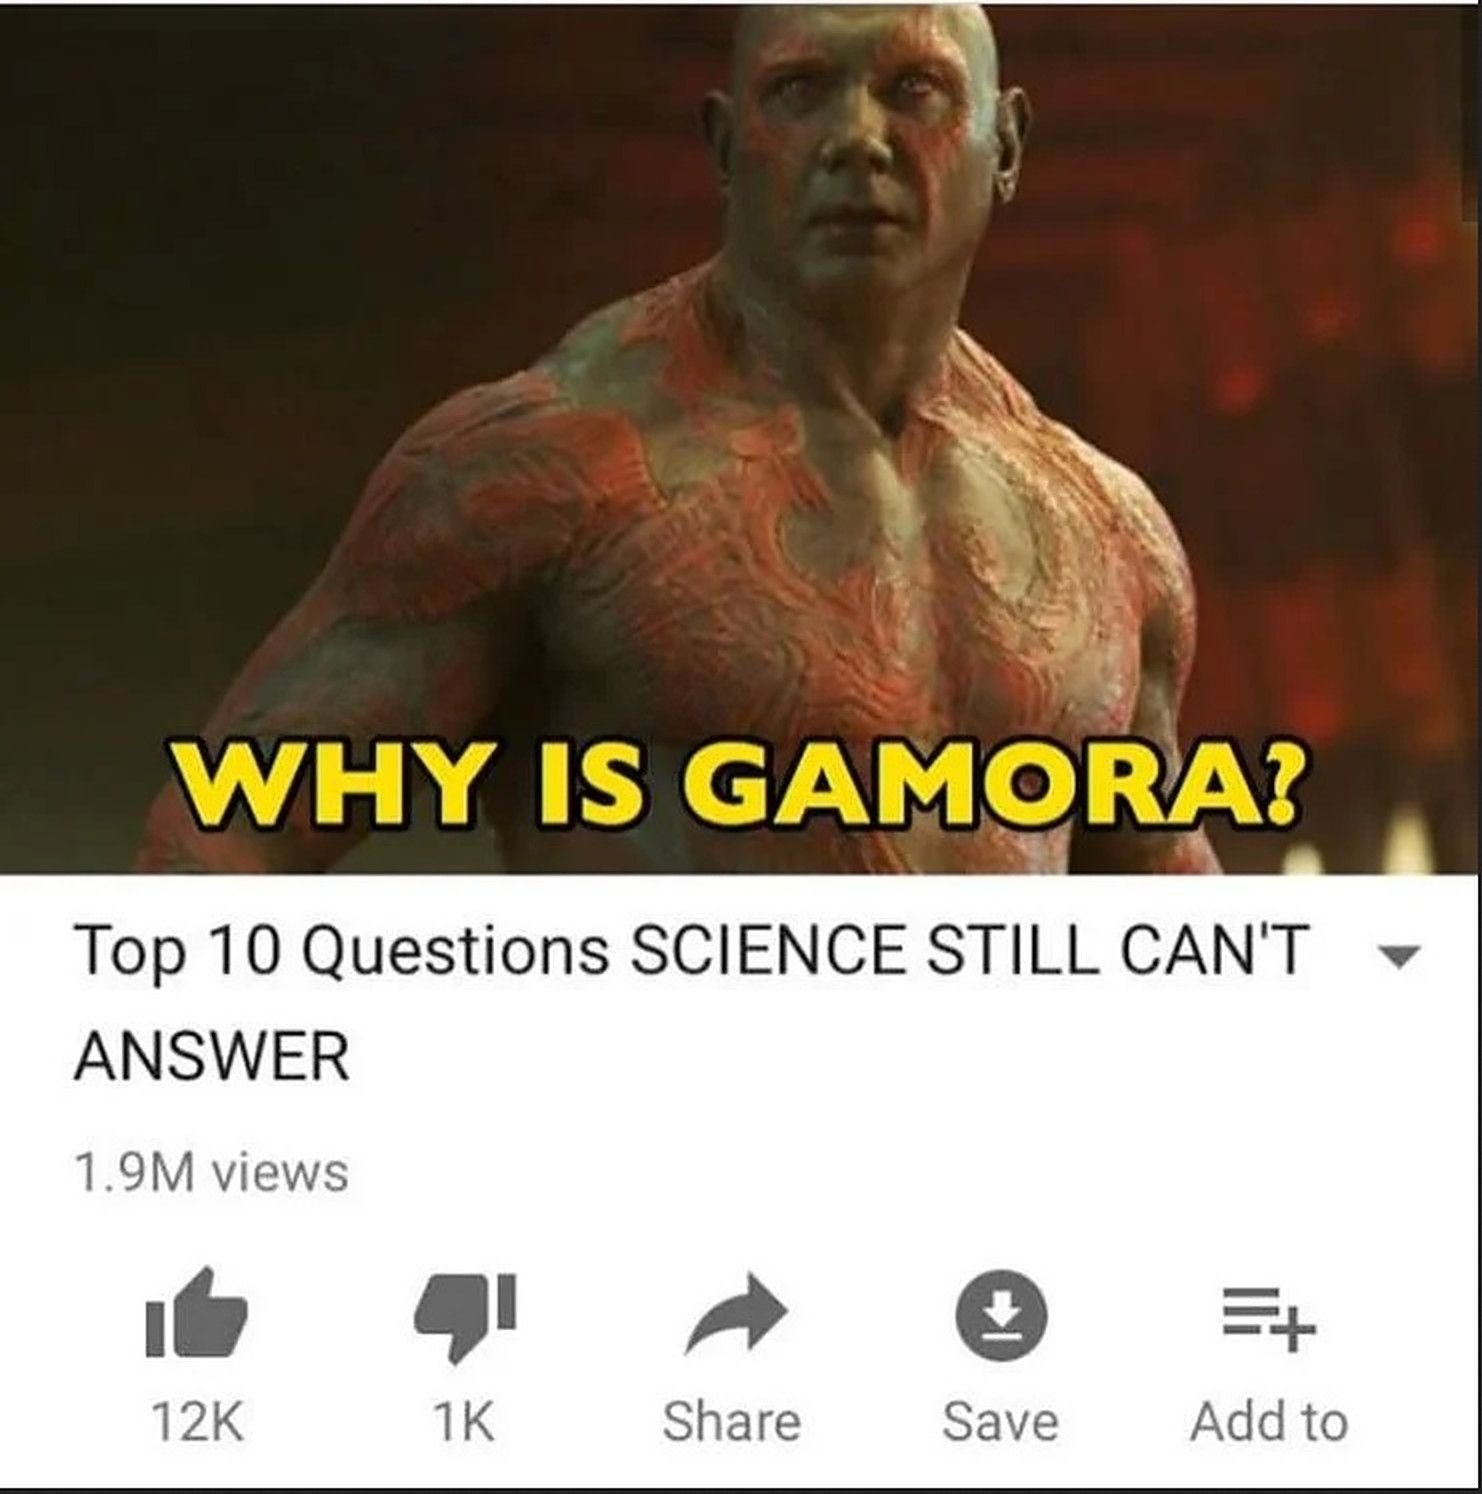 Drax wonders why is Gamora